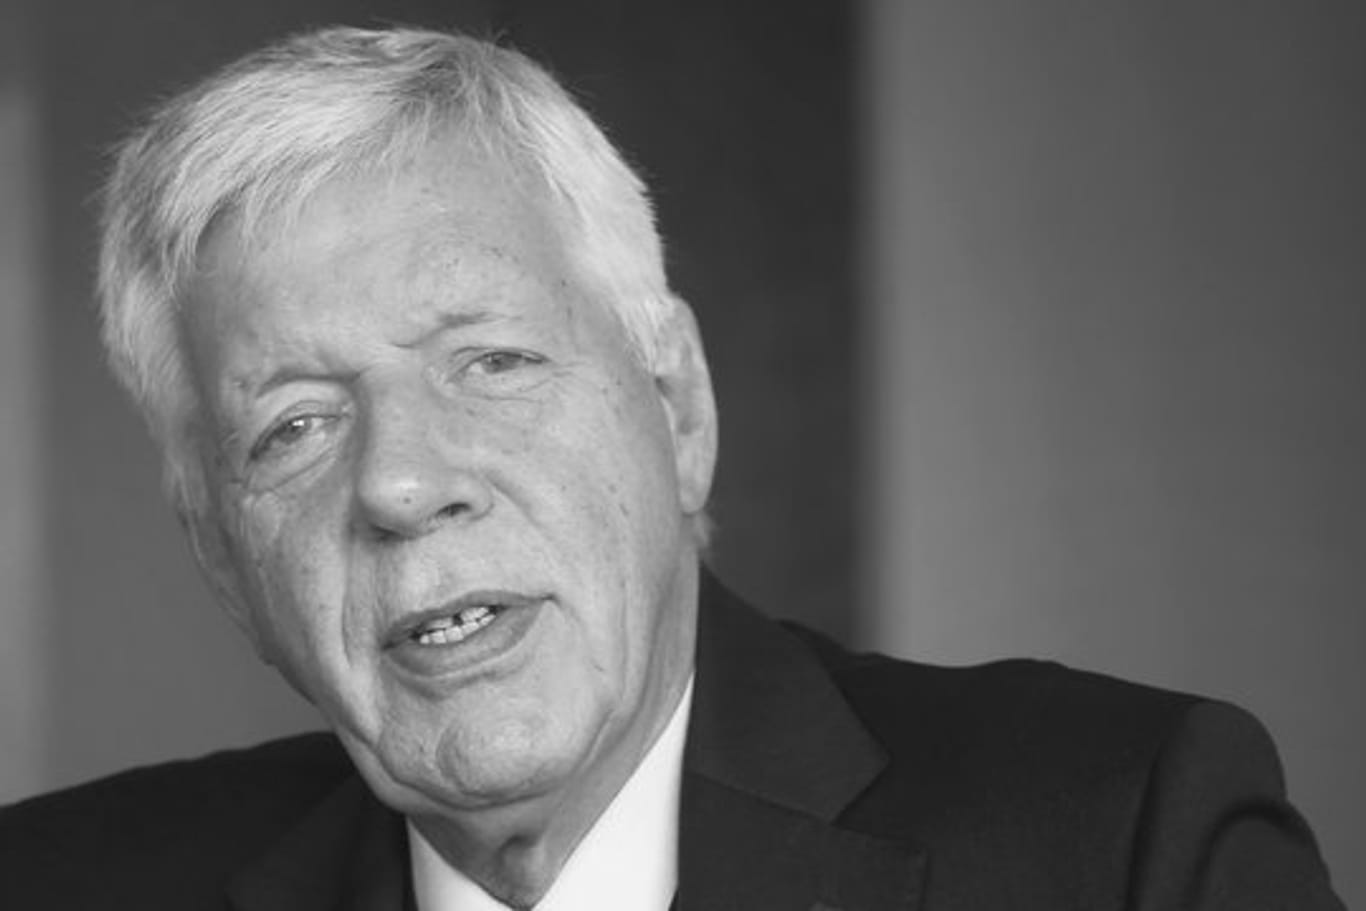 Der ehemalige Bundeswirtschaftsminister Werner Müller ist tot.